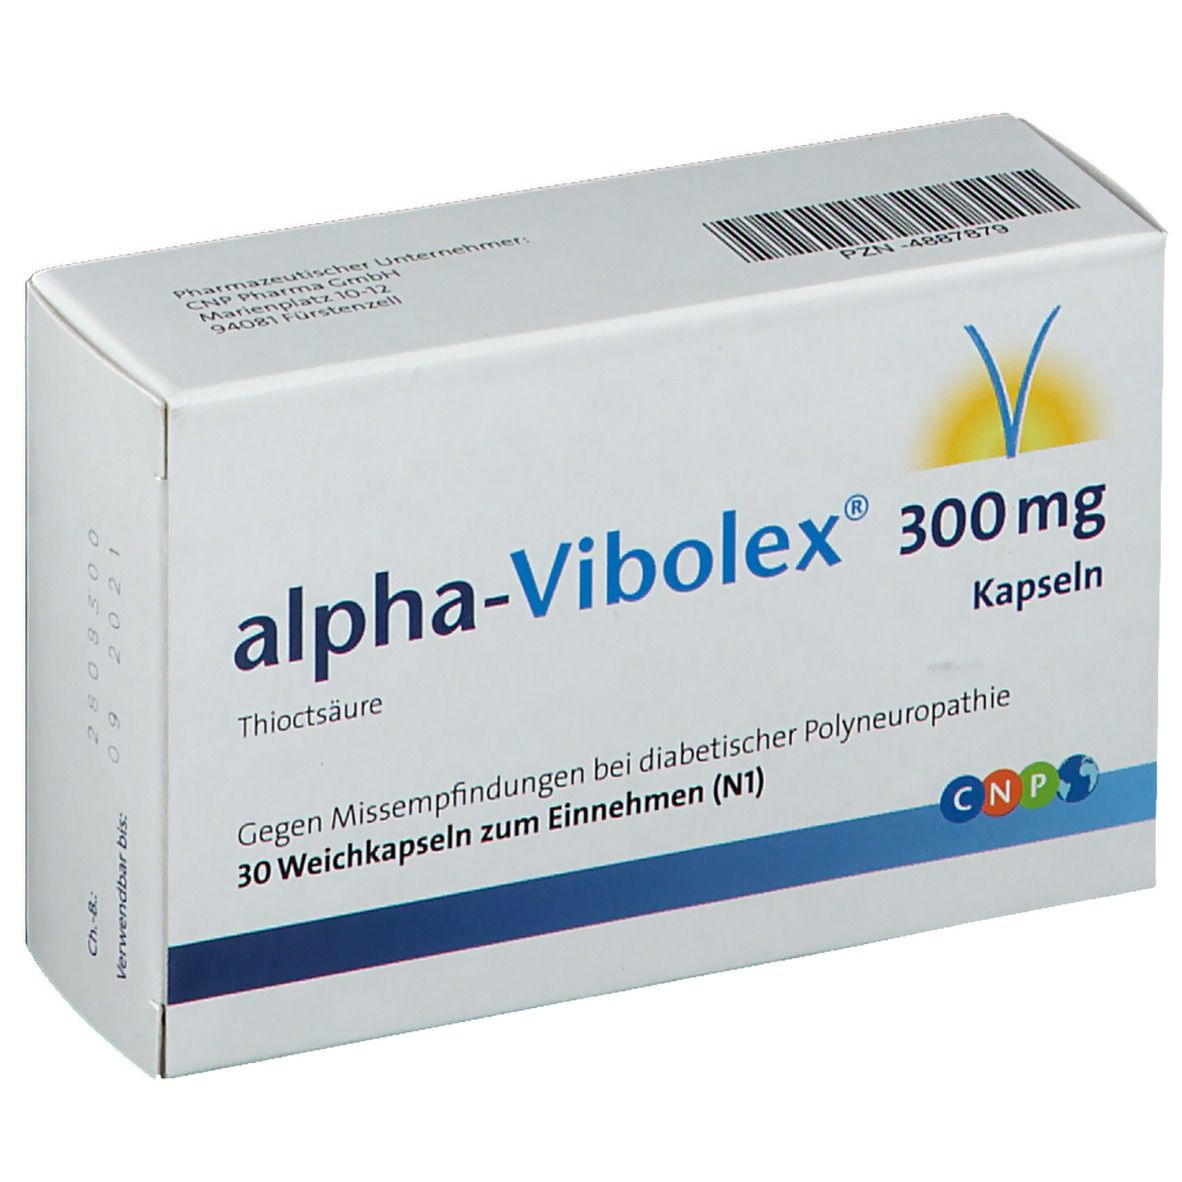 Alpha Vibolex 300 mg Kapseln